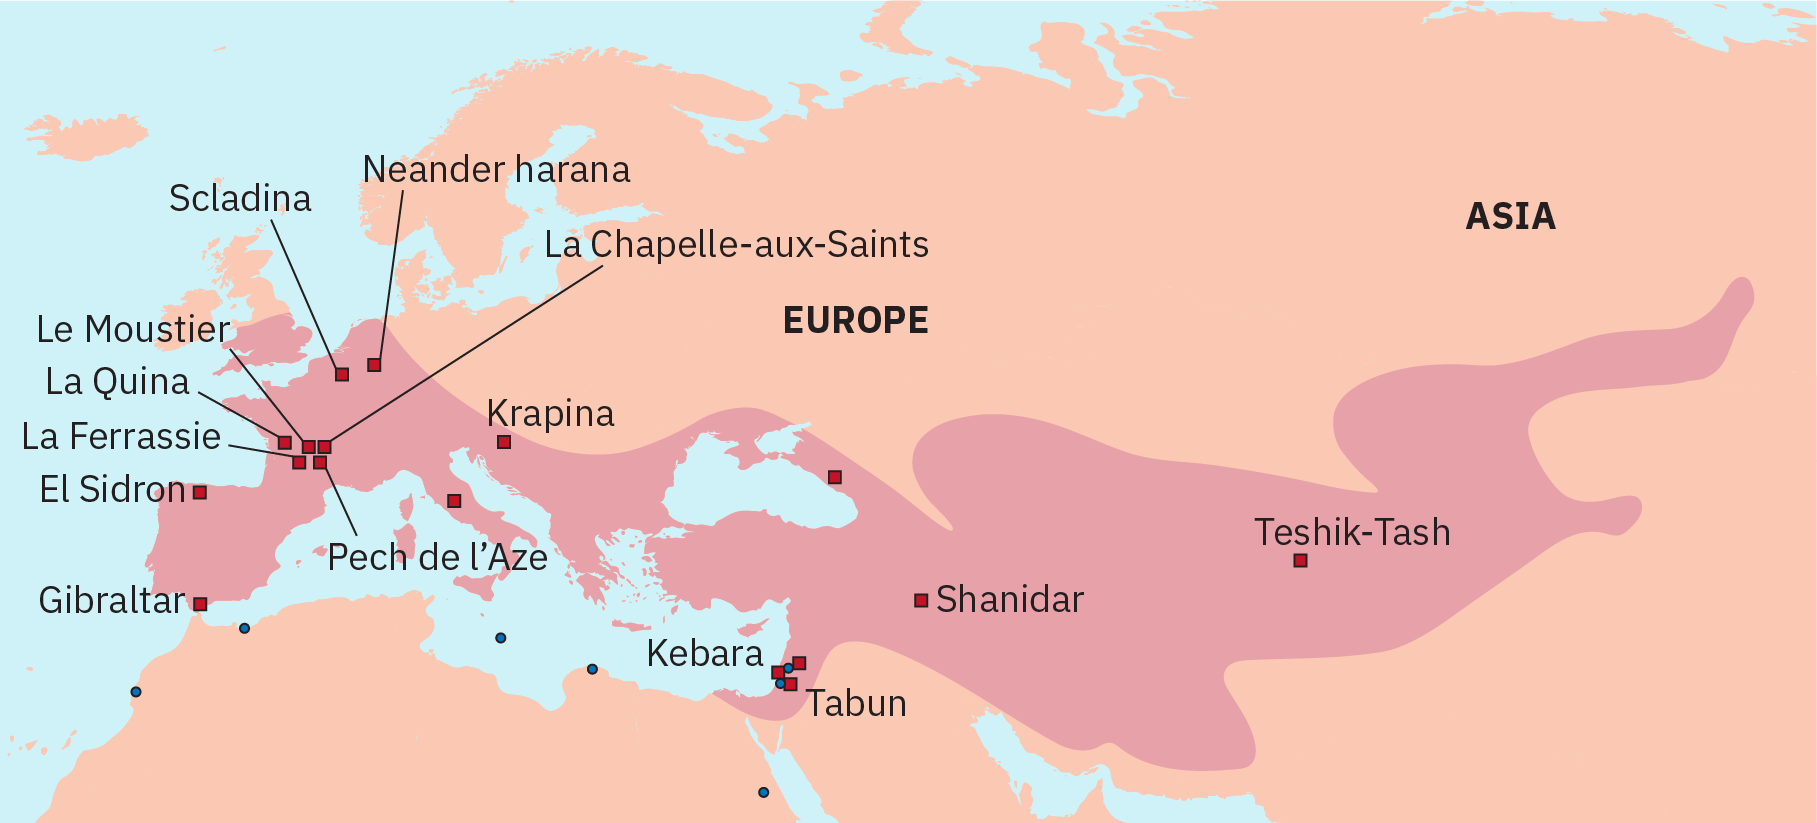 站点位置和地域出现在欧洲、中东和亚洲内陆地区。